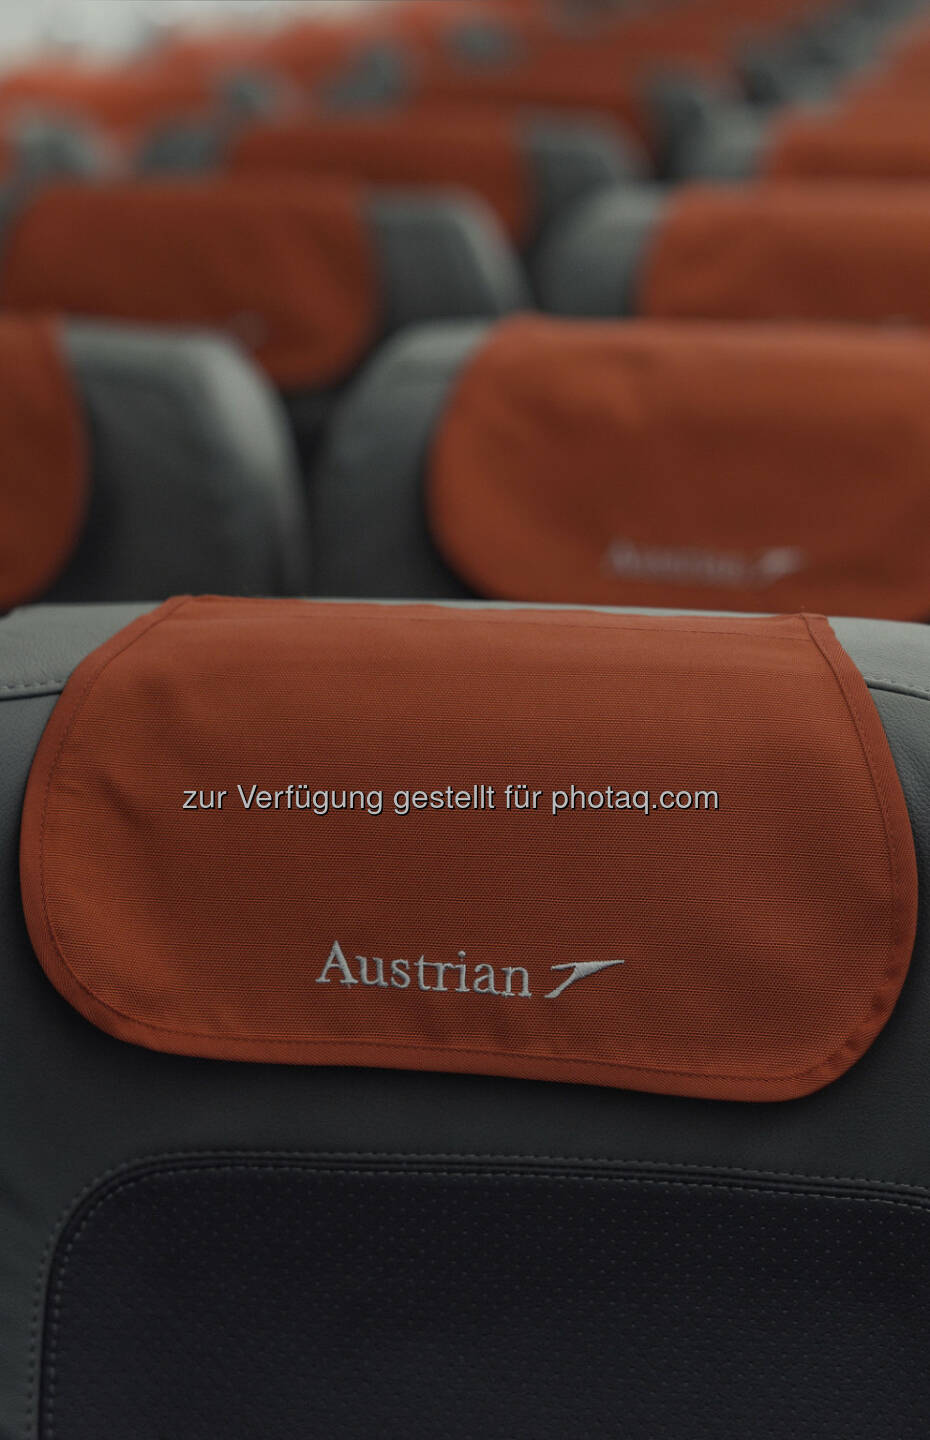 Alle Flugzeuge der Austrian Kurzstreckenflotte mit neuer Innenausstattung und neuem Design, 3.119 Sitze mit neuen Lederbezügen in vornehmem Grau mit roten Akzenten ausgestattet (Bild: Austrian Airlines Group)